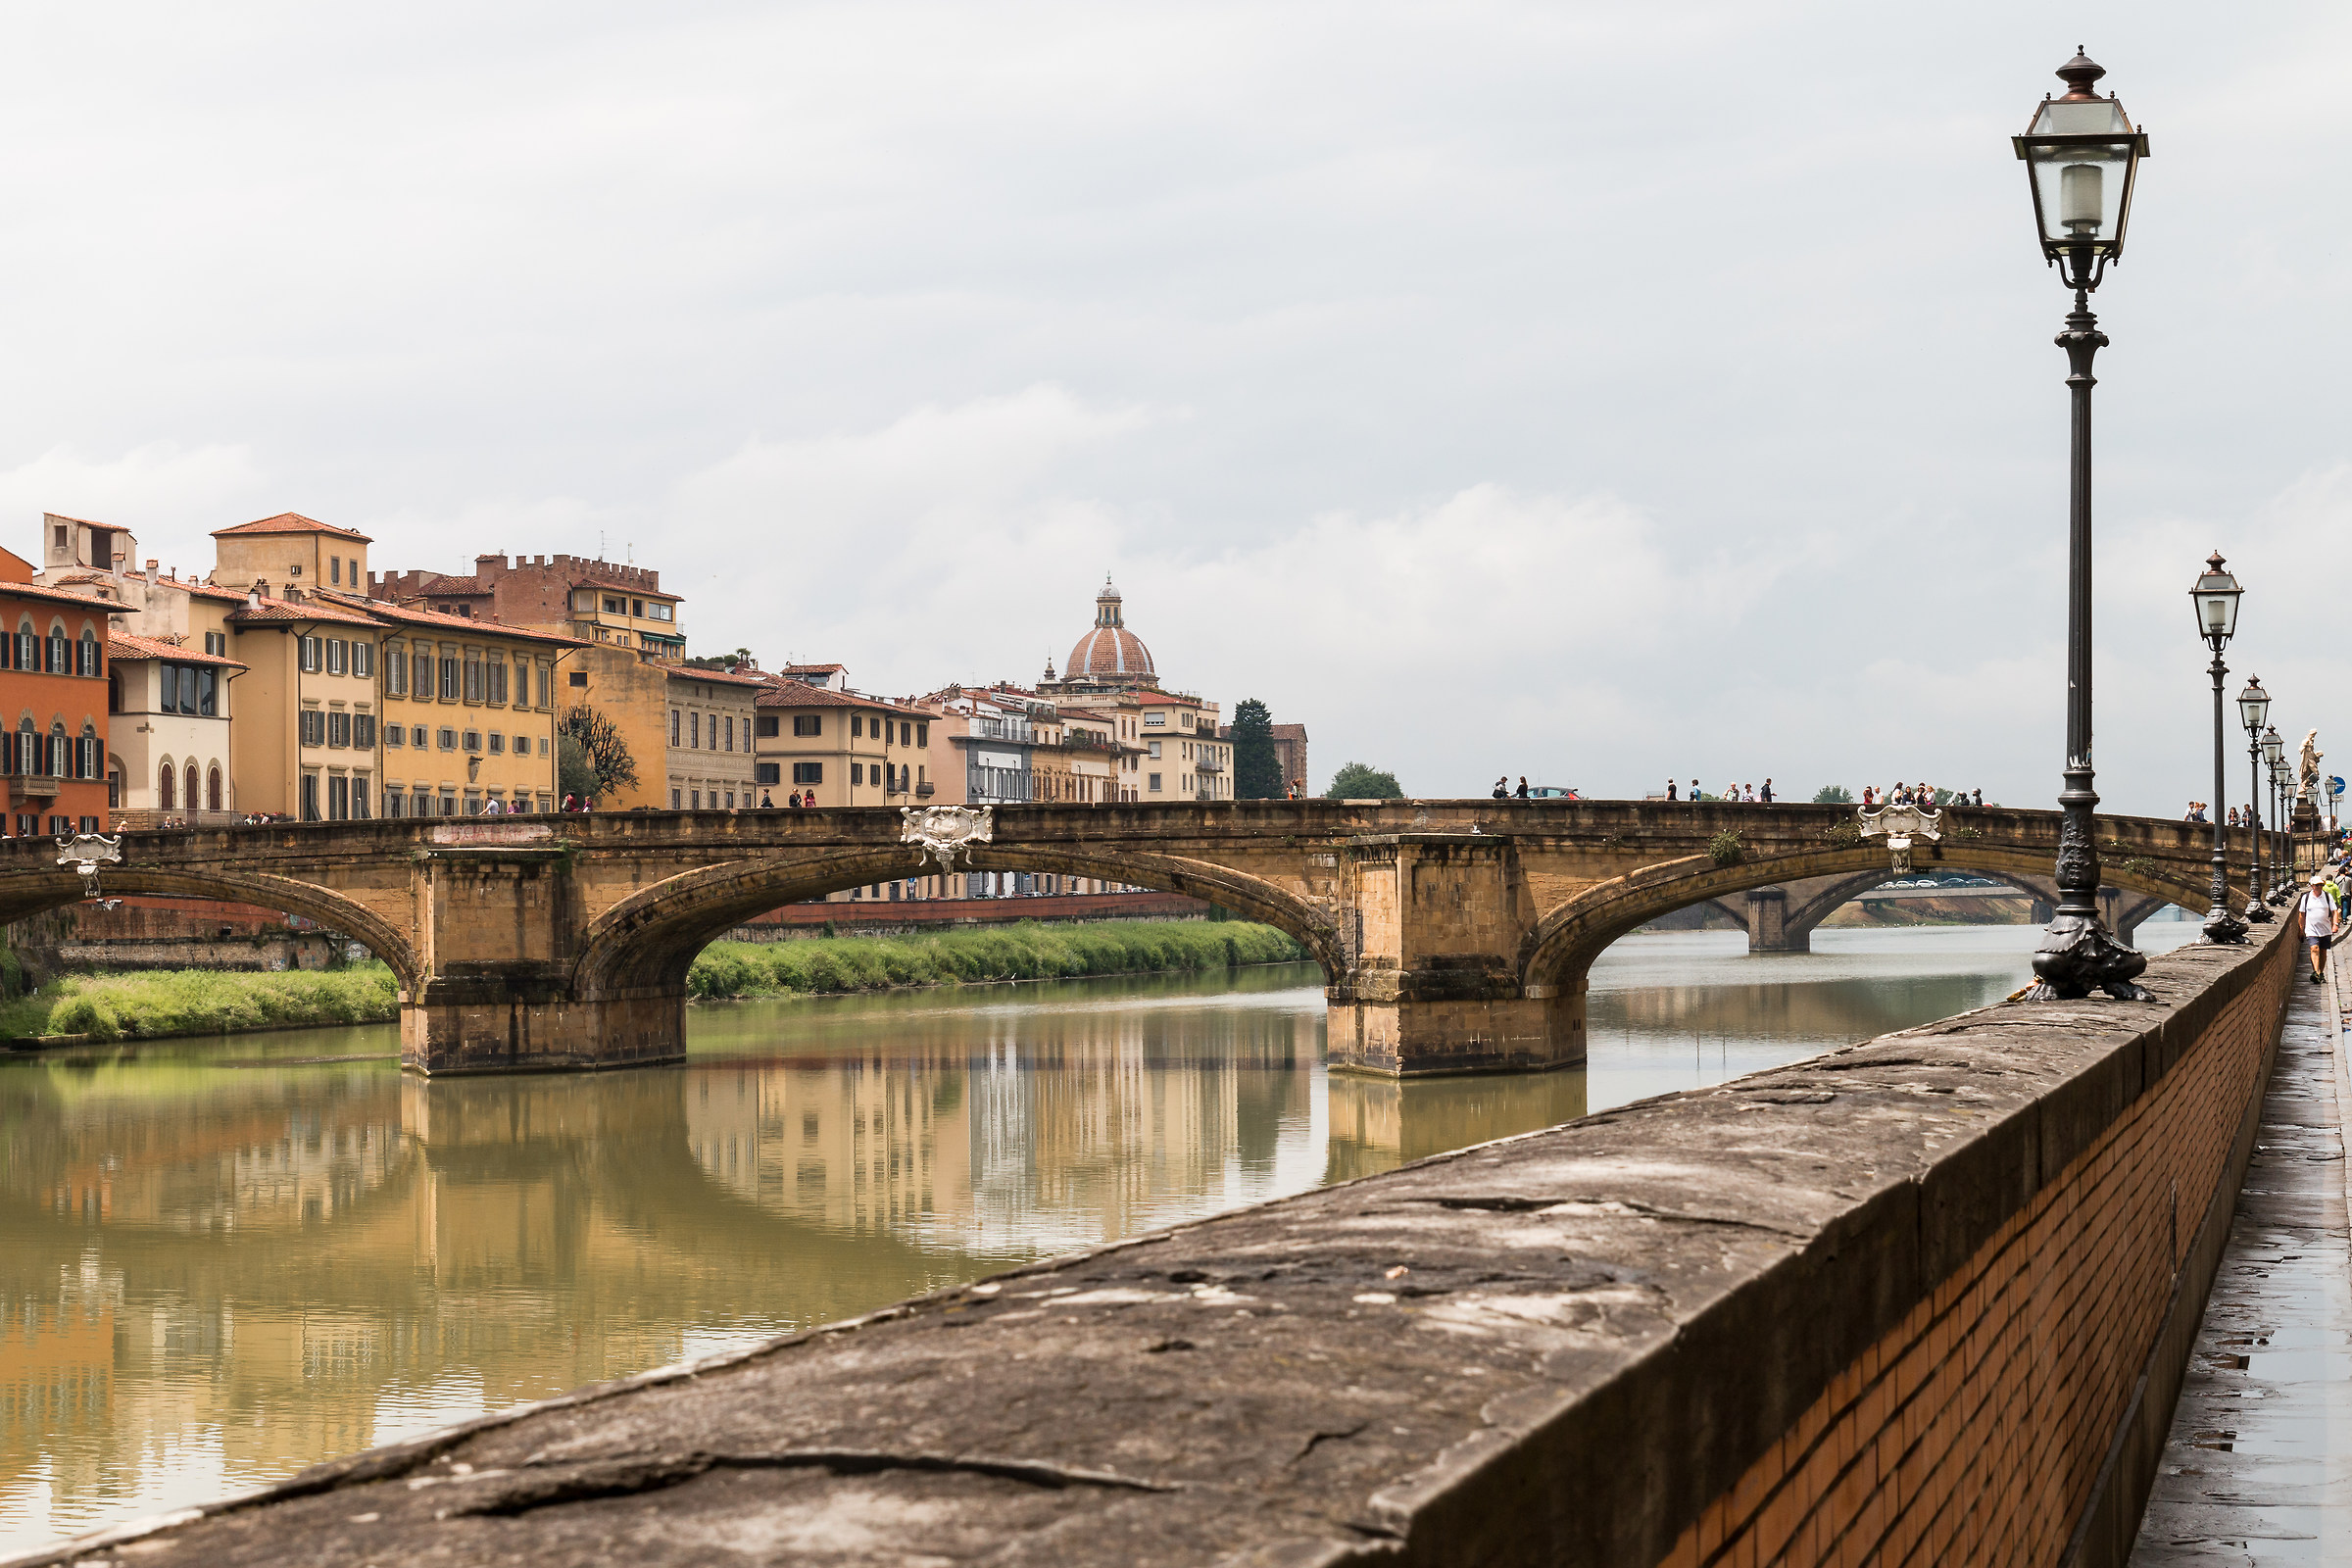 Passeggiata lungo l'Arno...